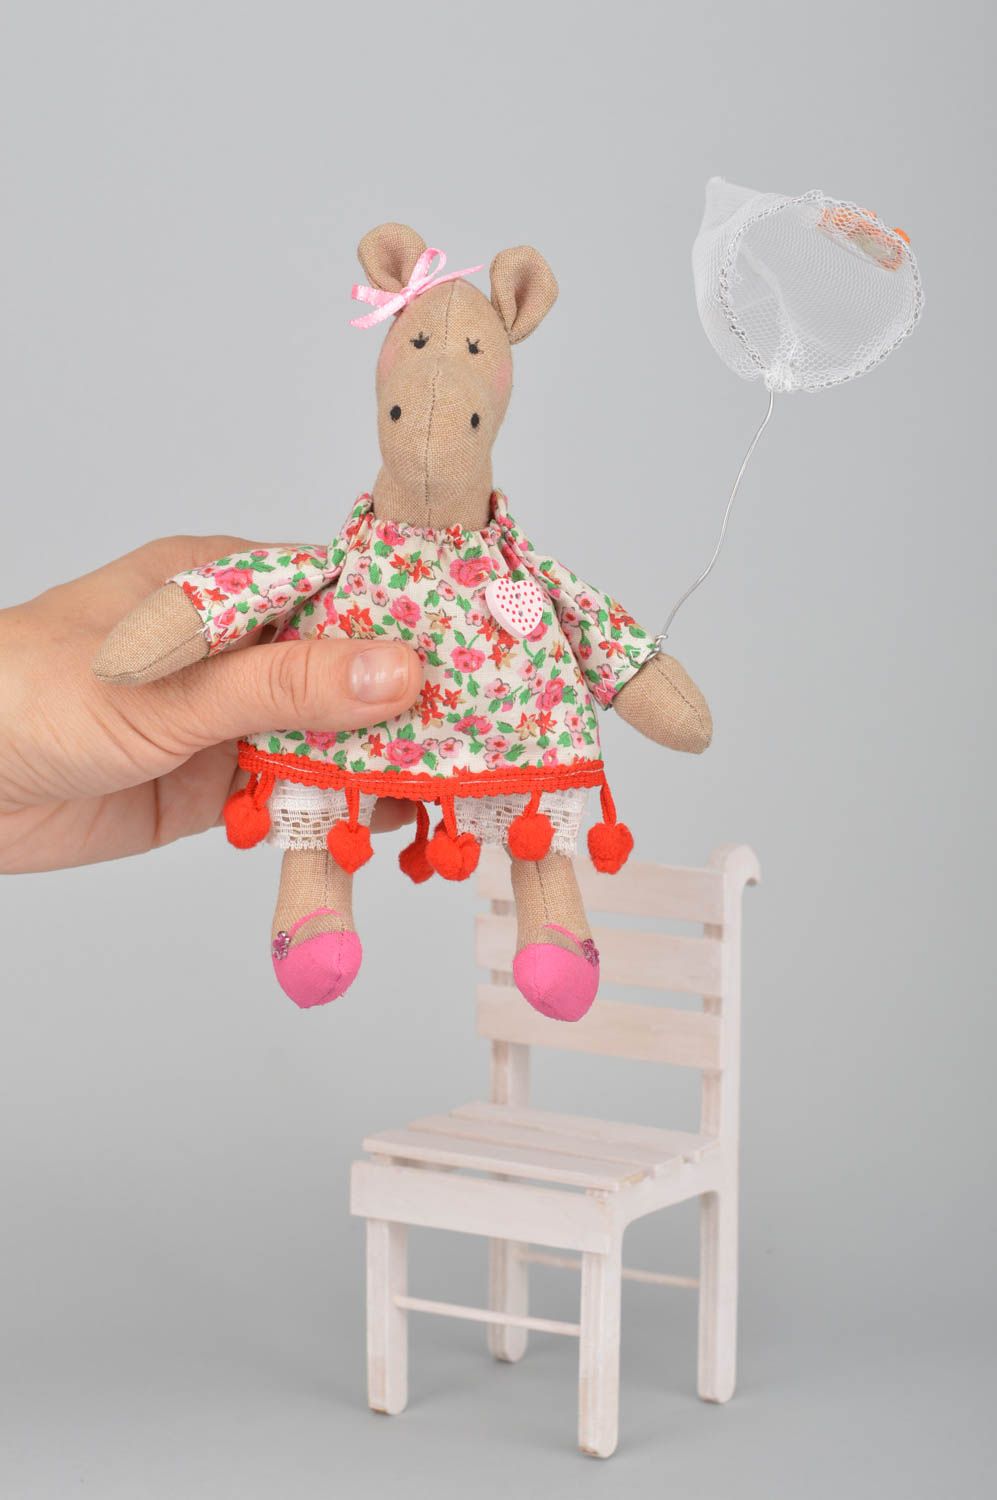 Мягкая игрушка ручной работы для дома из хлопка Бегемотик в платье на стуле фото 5